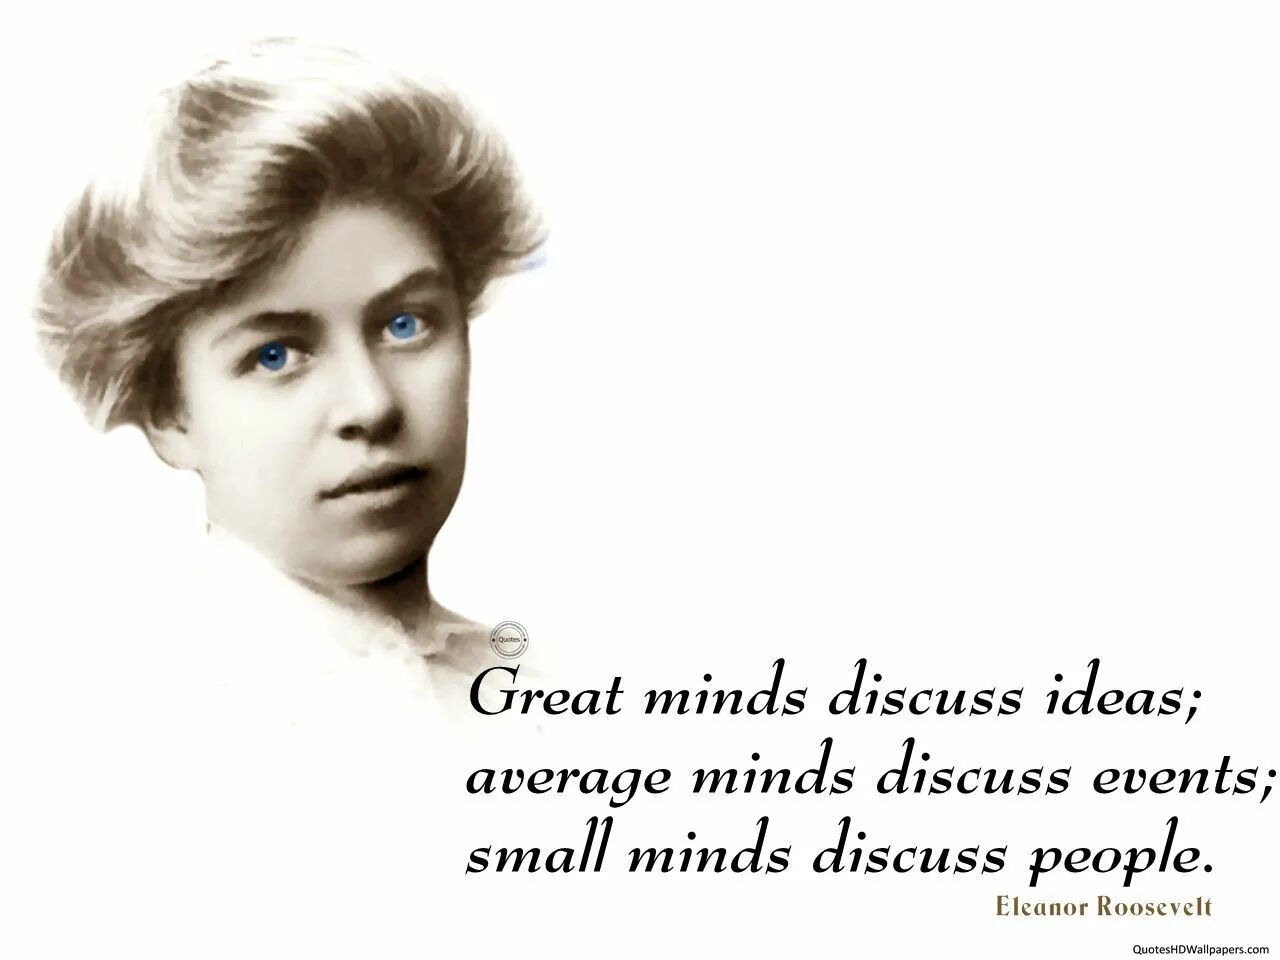 Обычные люди обсуждают людей. Цитата Элеоноры Рузвельт про Великие умы. Великие умы обсуждают идеи средние.